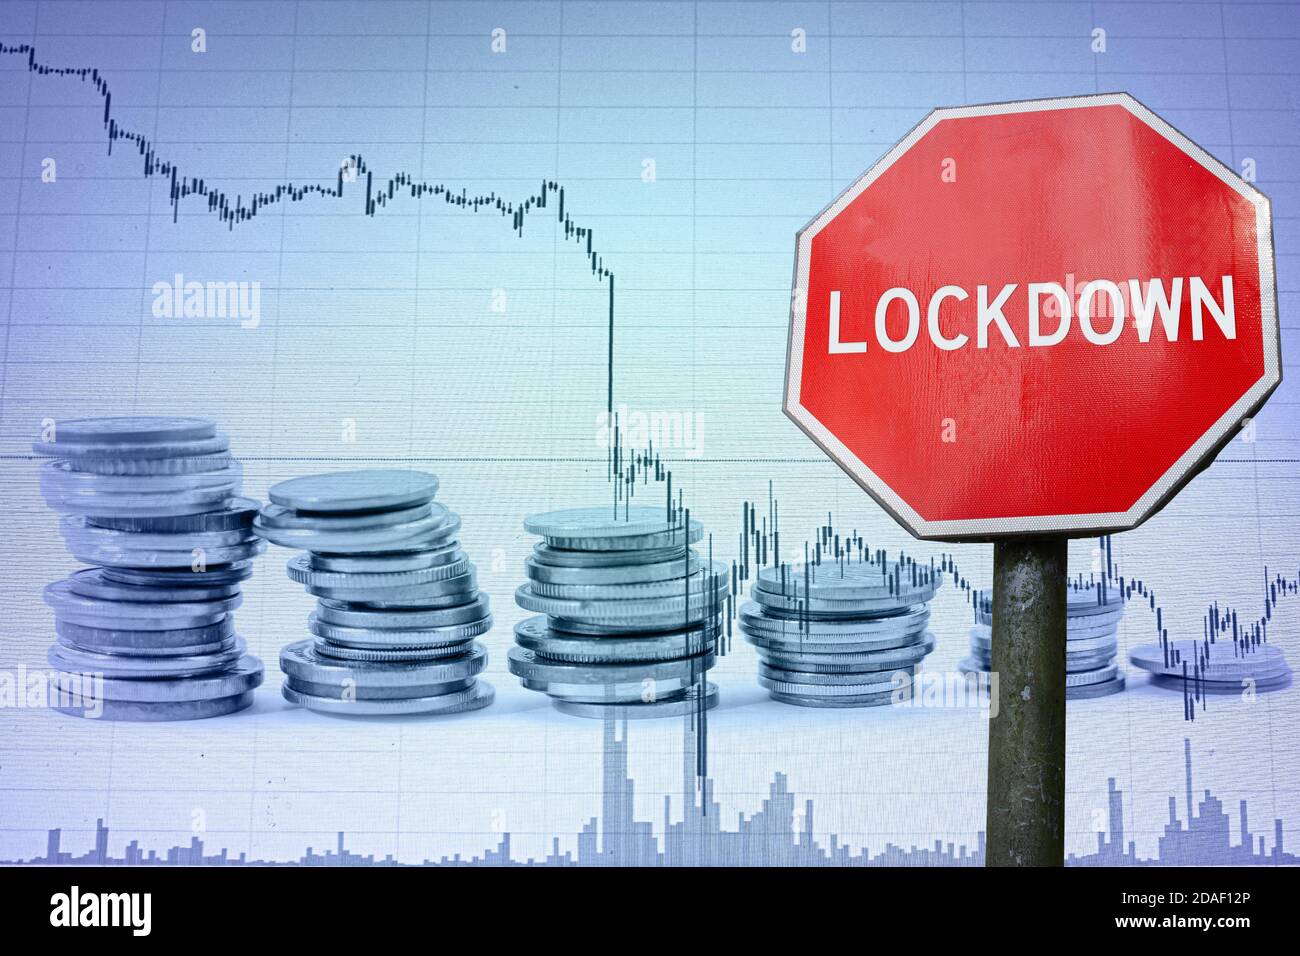 Lockdown-Zeichen auf Wirtschaft Hintergrund - Grafik und Münzen. Lockdown wegen Coronavirus. Globale Wirtschaftskrise, Rezession. Stockfoto